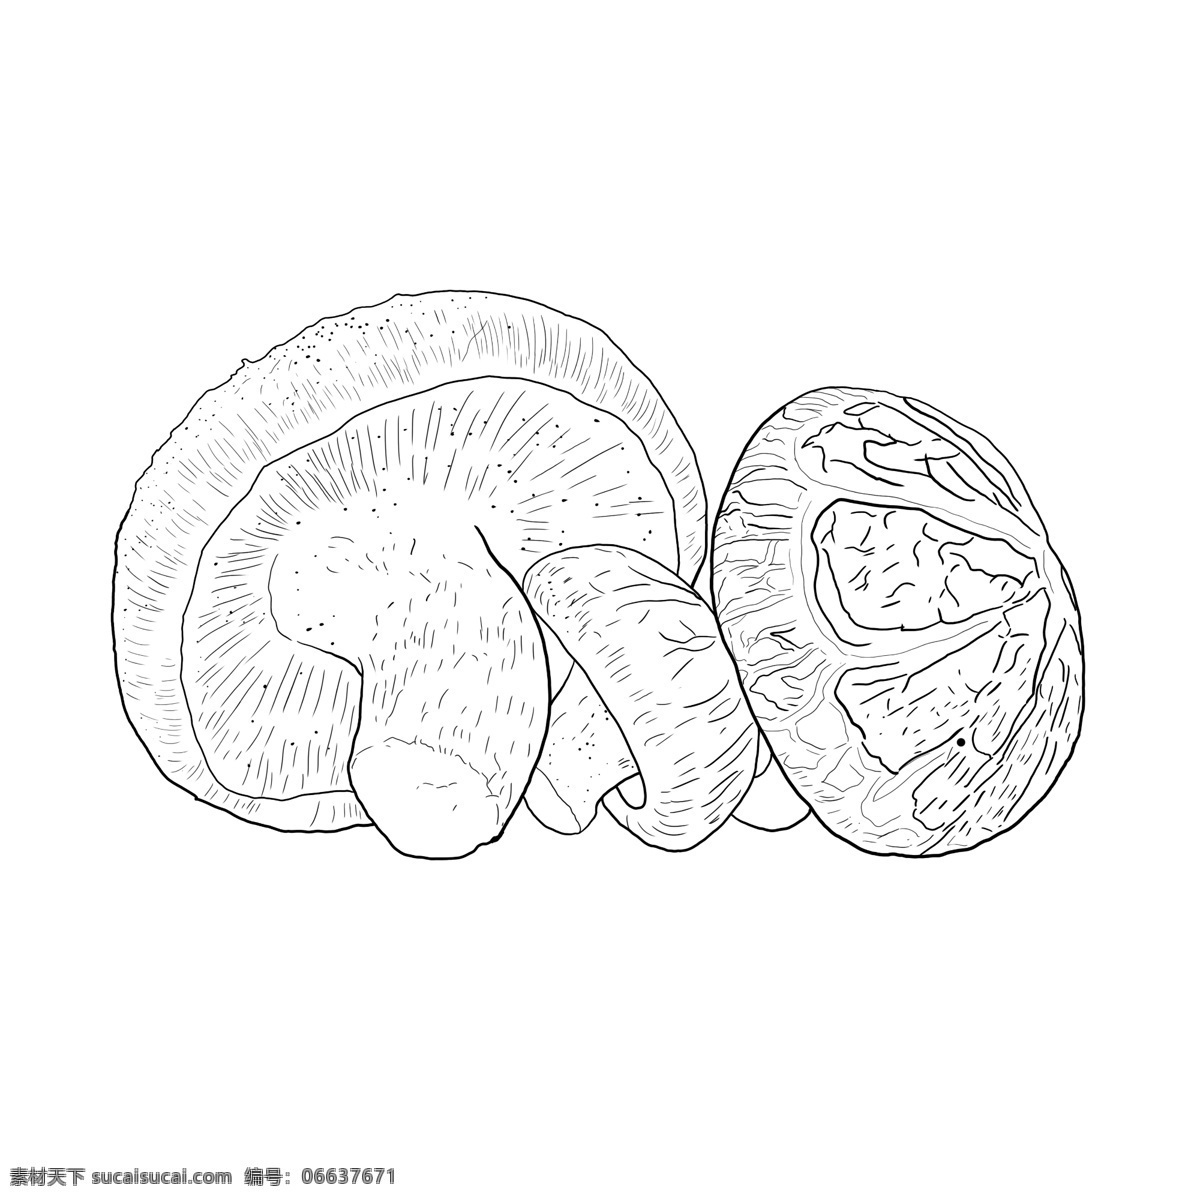 香菇图片 香菇 花菇 手绘香菇 植物 菌 食用菌 菇 蘑菇